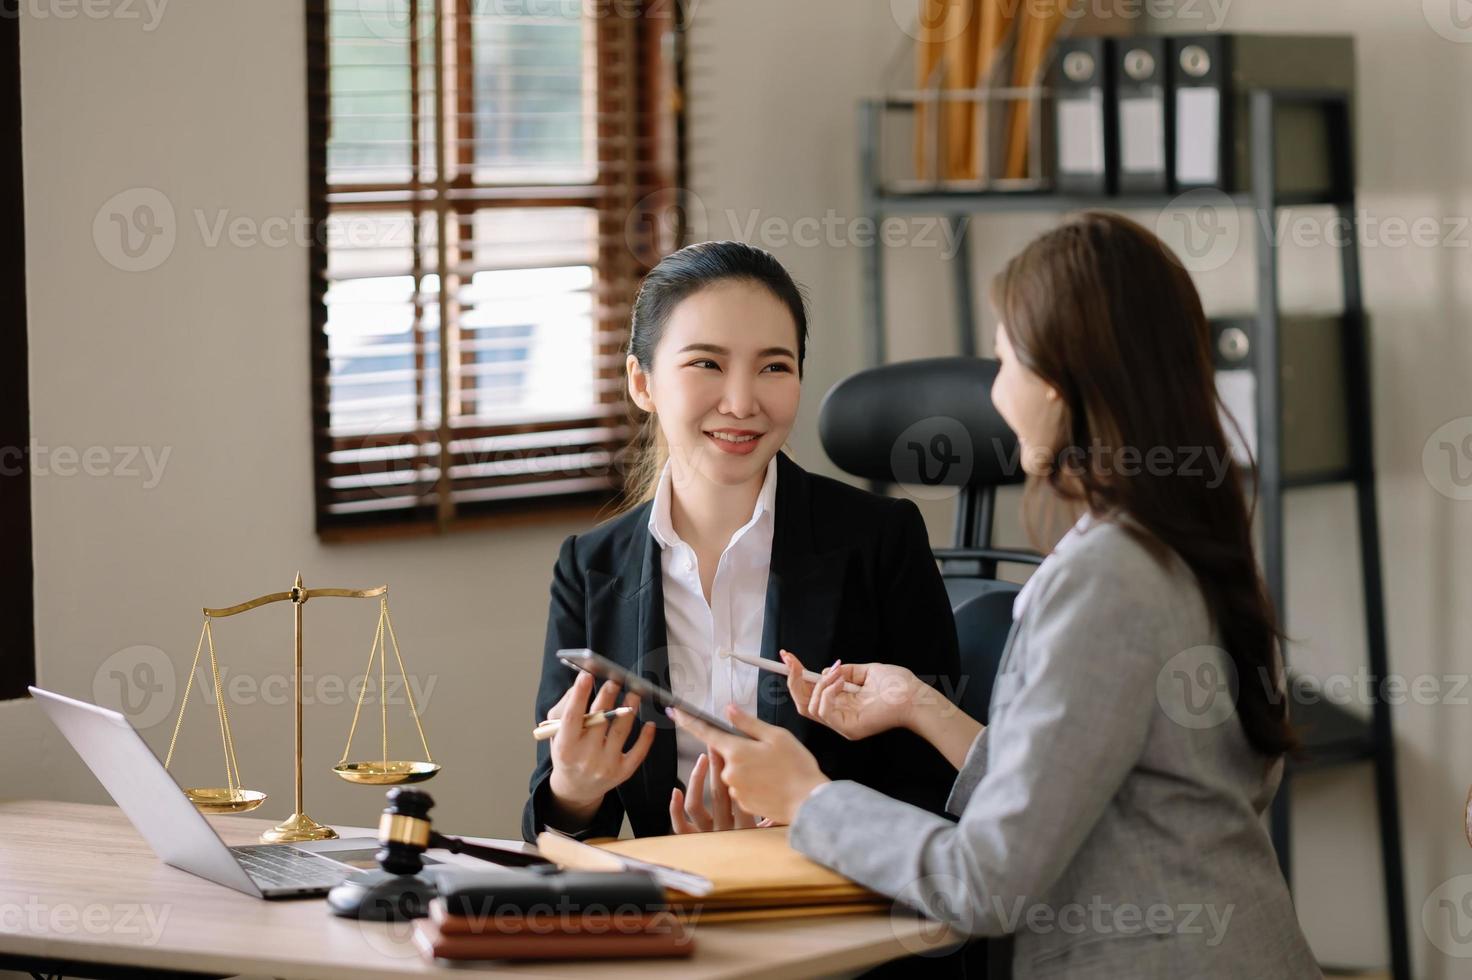 företag och kvinna advokat eller bedöma rådfråga har team möte med klient, lag och Rättslig tjänster koncept.kund service Bra samarbete i kontor foto